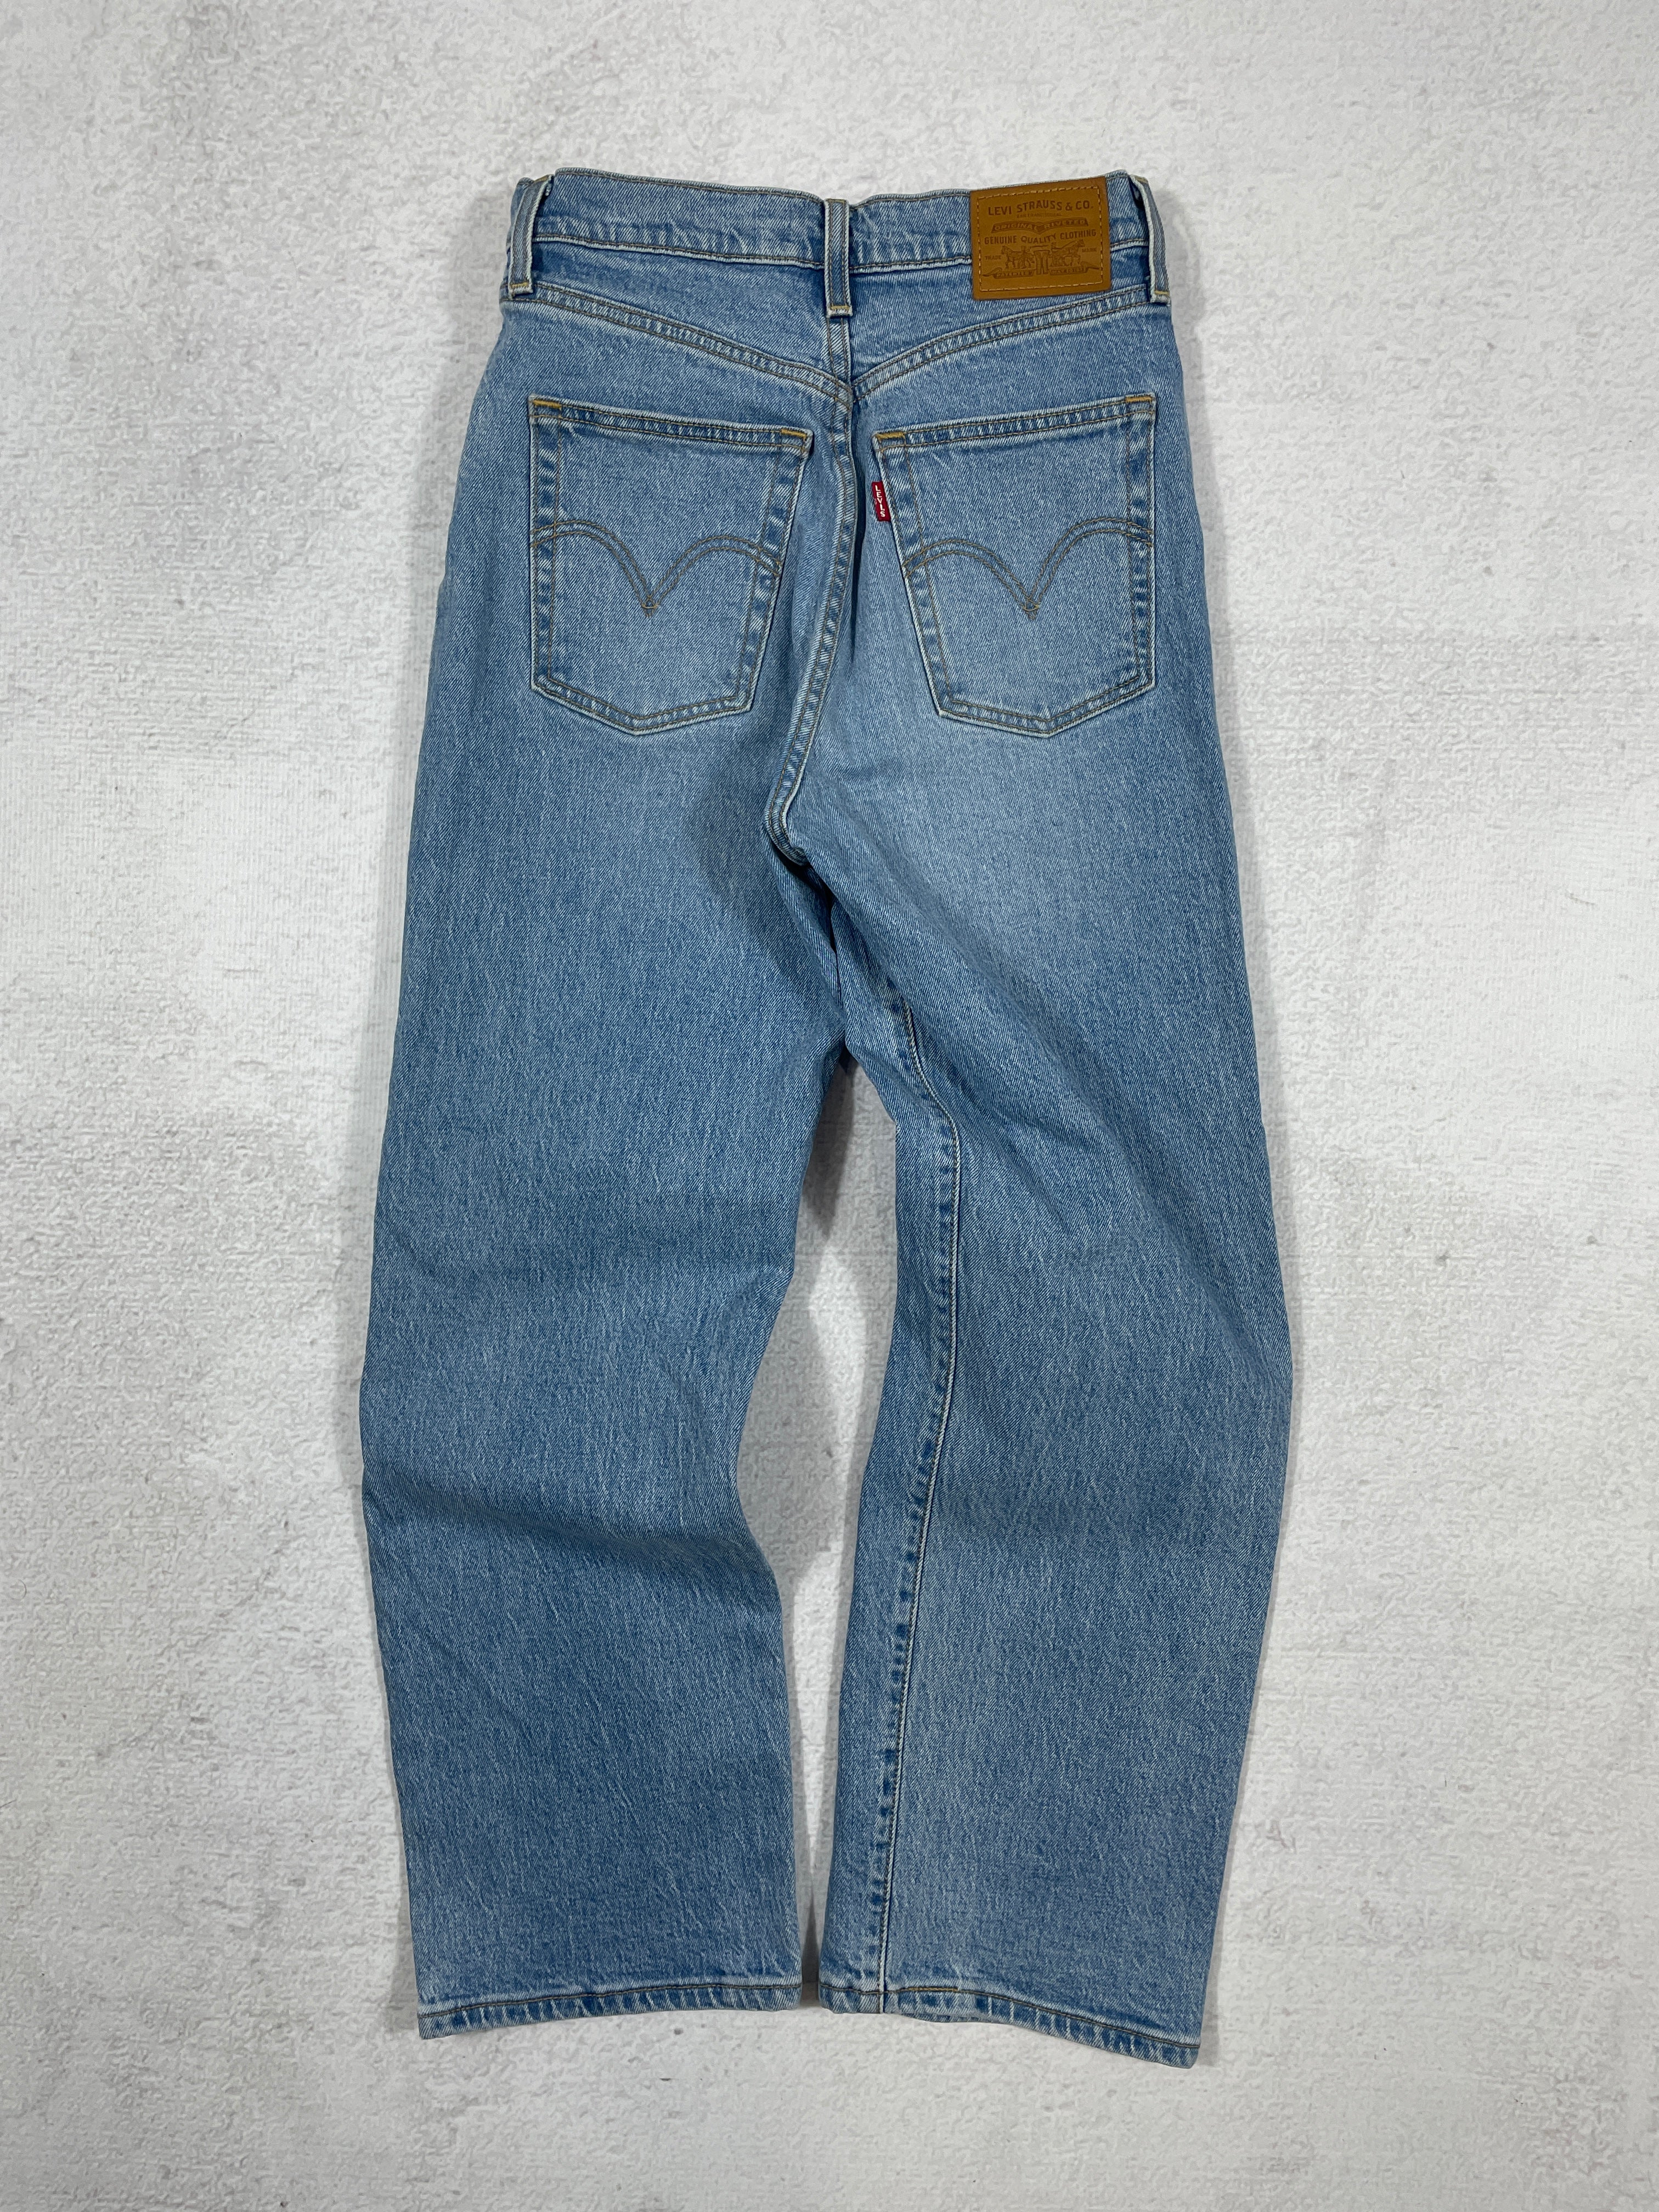 Vintage Levis Straight Jeans - Women's 26Wx27L